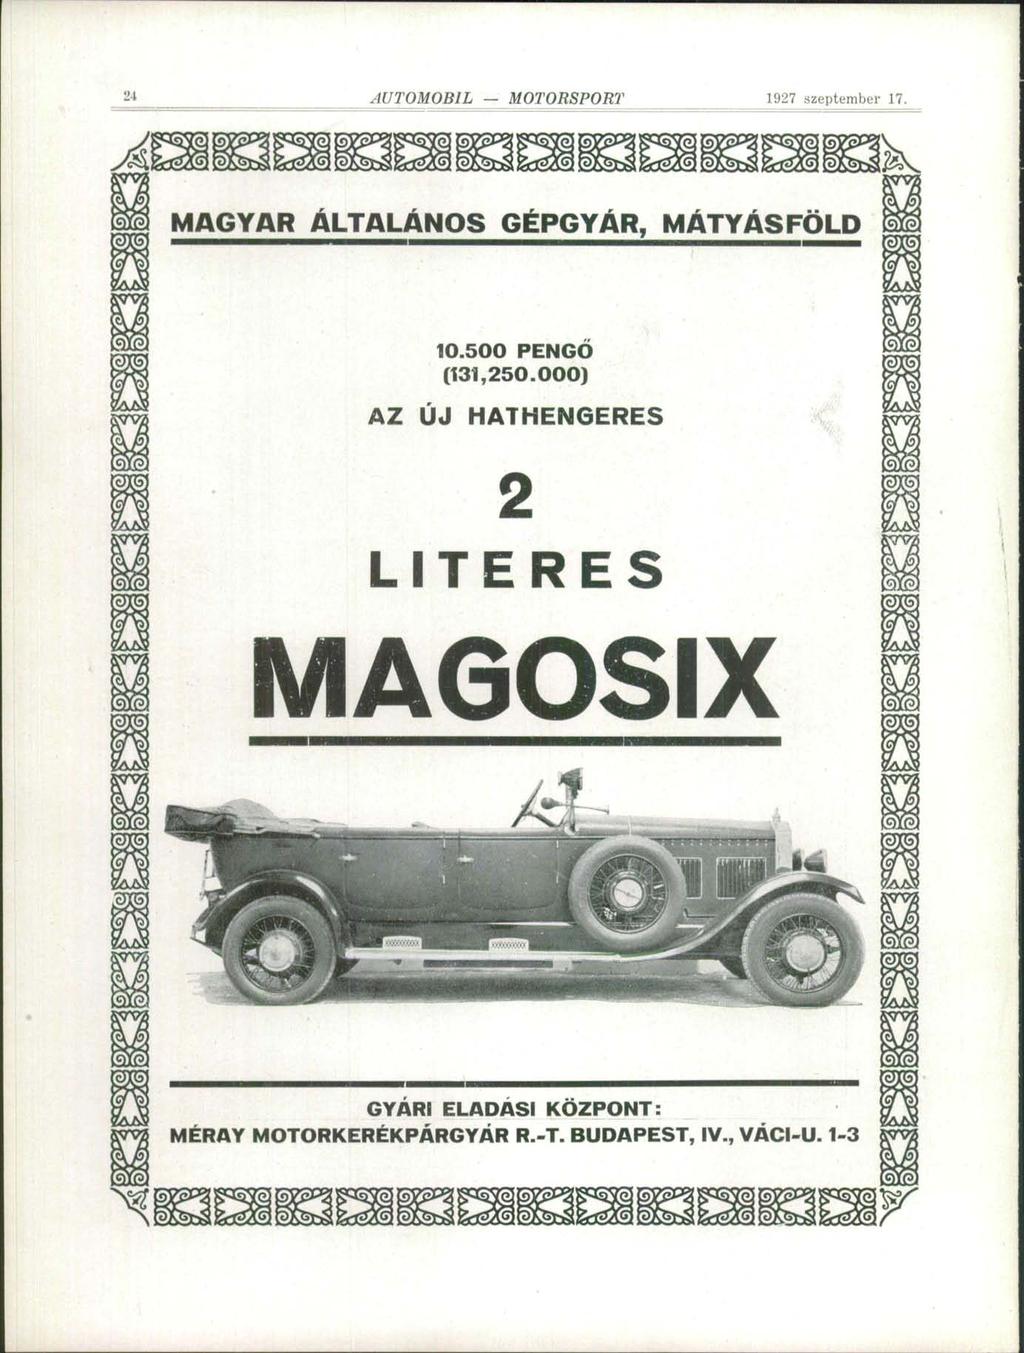 1" AUTOMOBIL MOTORSPORT 1927 szeptember 1?. MAGYAR ÁLTALÁNOS GÉPGYÁR, MÁTYÁSFÖLD 10.500 PENGÓ (131,250.